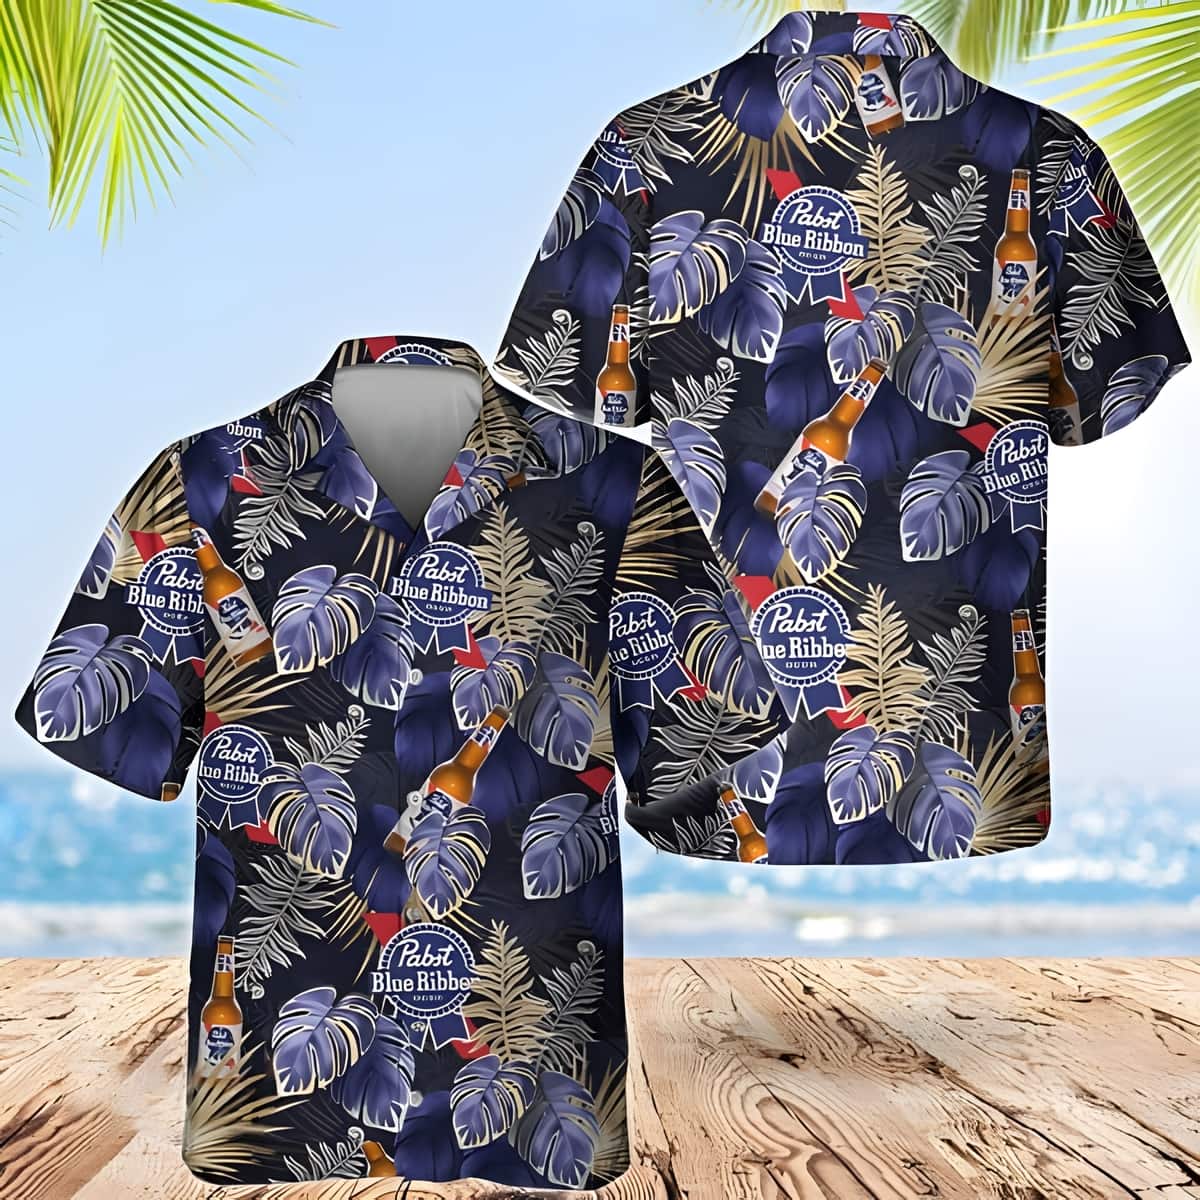 Pabst Blue Ribbon Hawaiian Shirt Tropical Palm Leaves Summer Beach Gift